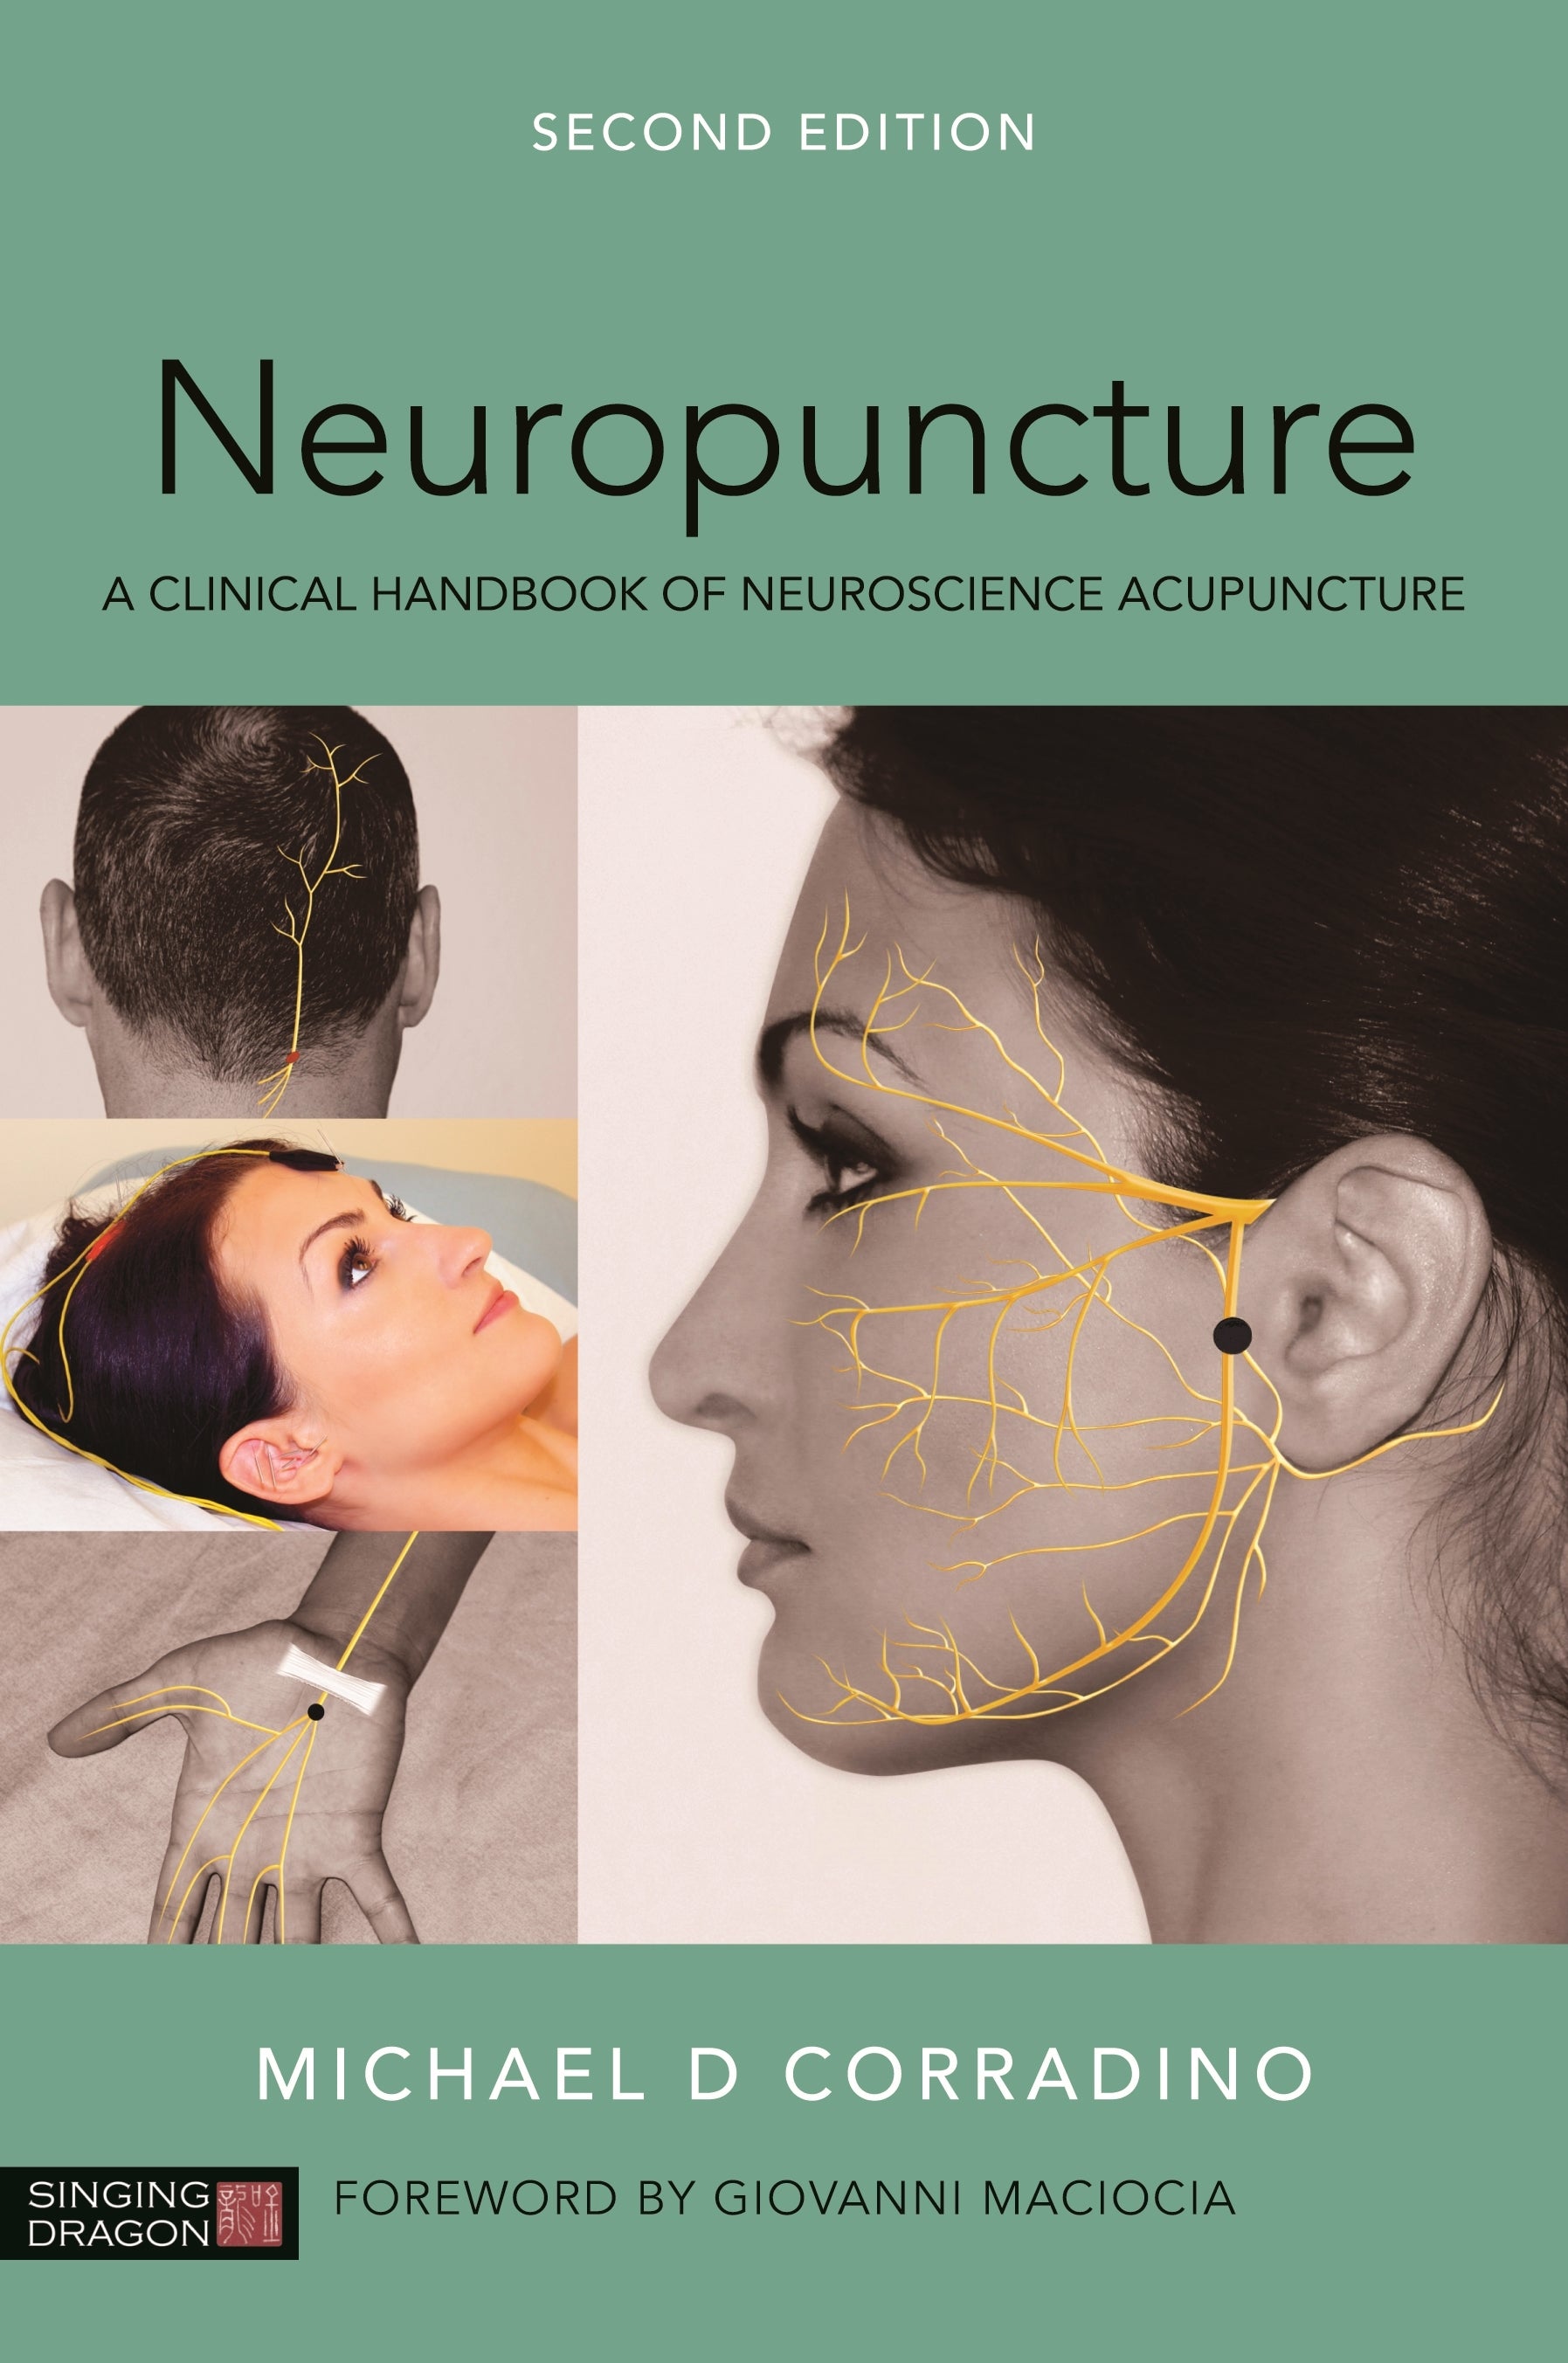 Neuropuncture by Michael Corradino, Giovanni Maciocia